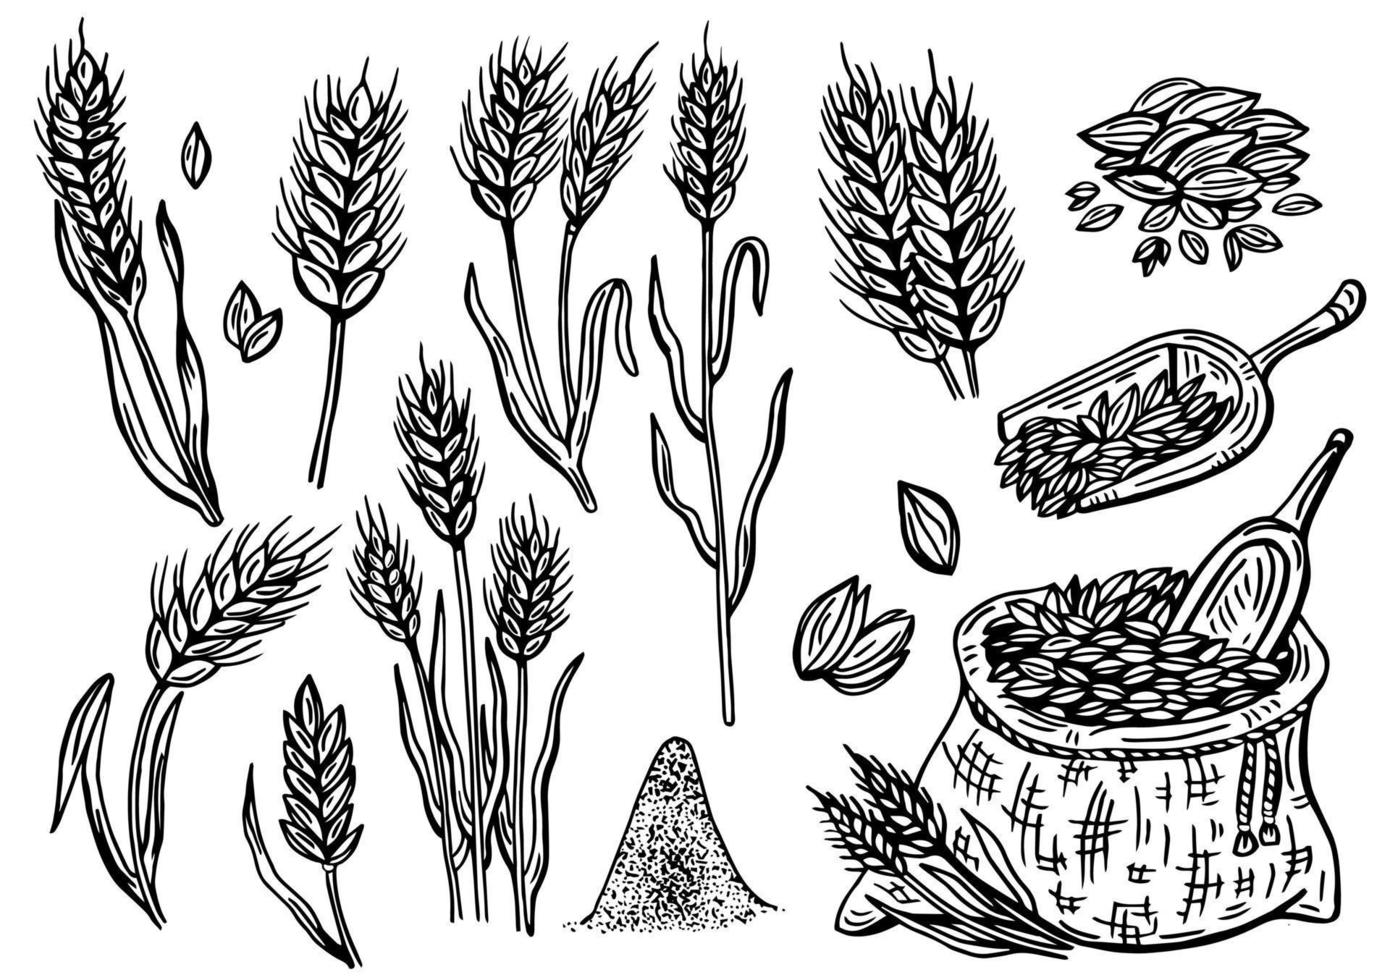 blé dessiné à la main. plantes céréalières dans un sac et céréales dans un bol, seigle orge et épis de blé. croquis croquis croquis pour modèle d'emballage alimentaire, gravure alimentaire vecteur